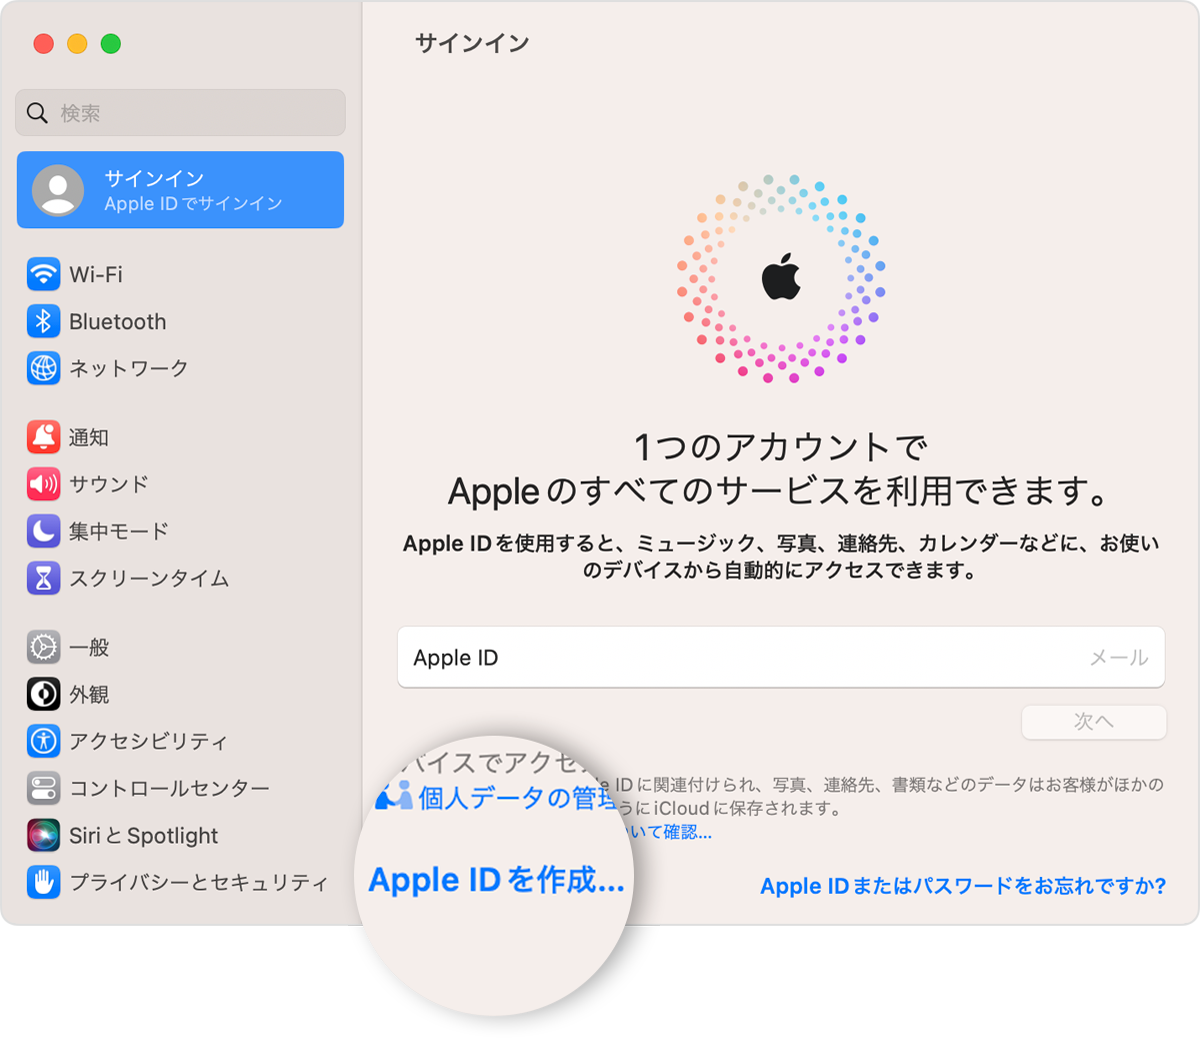 Mac の画面に、クリックできる「Apple ID を作成」リンクが表示されているところ